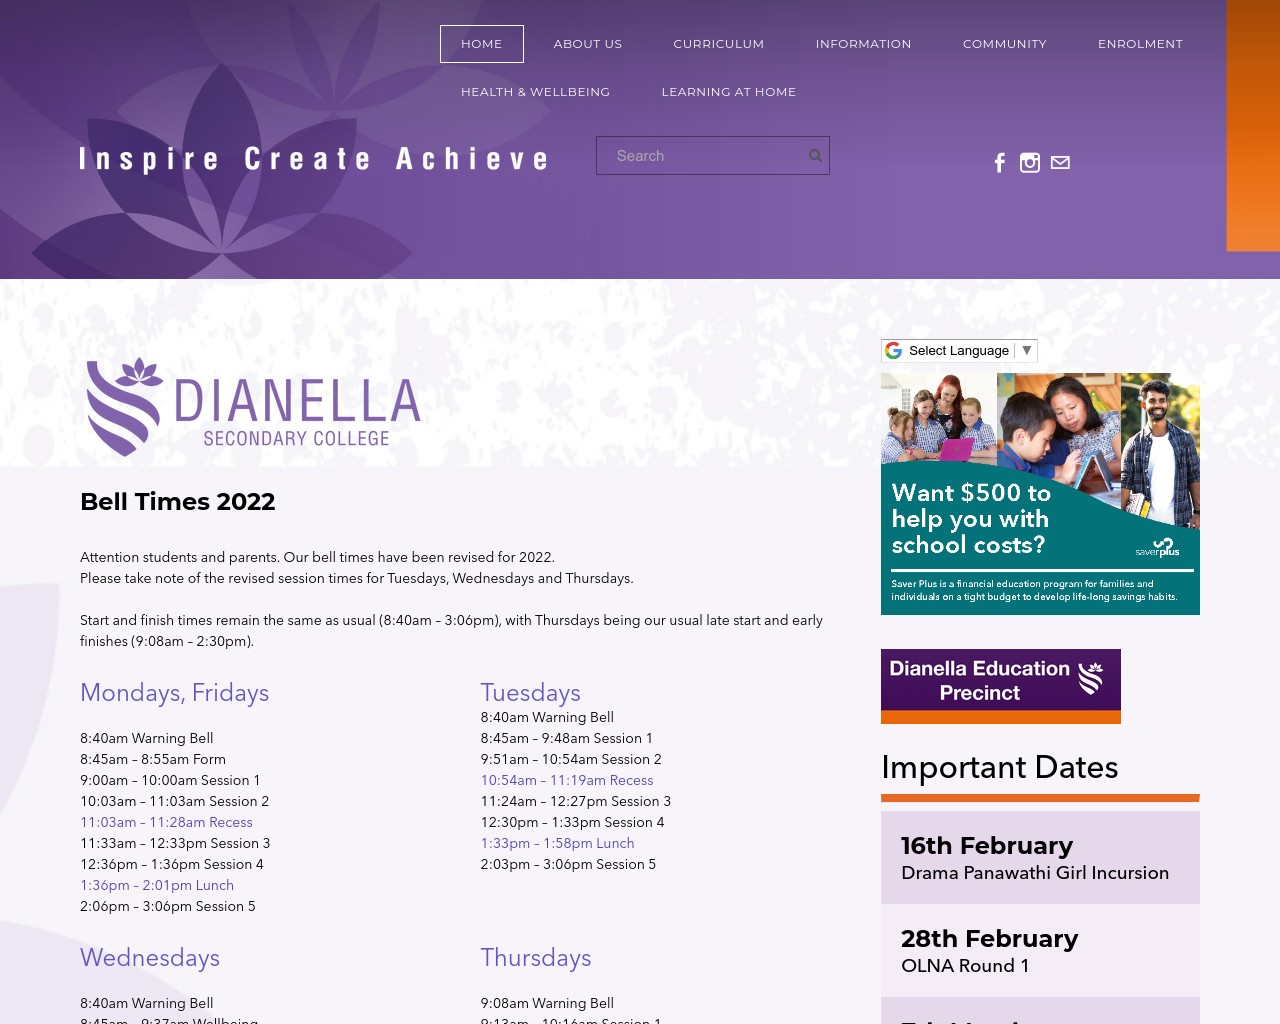 Dianella Secondary College